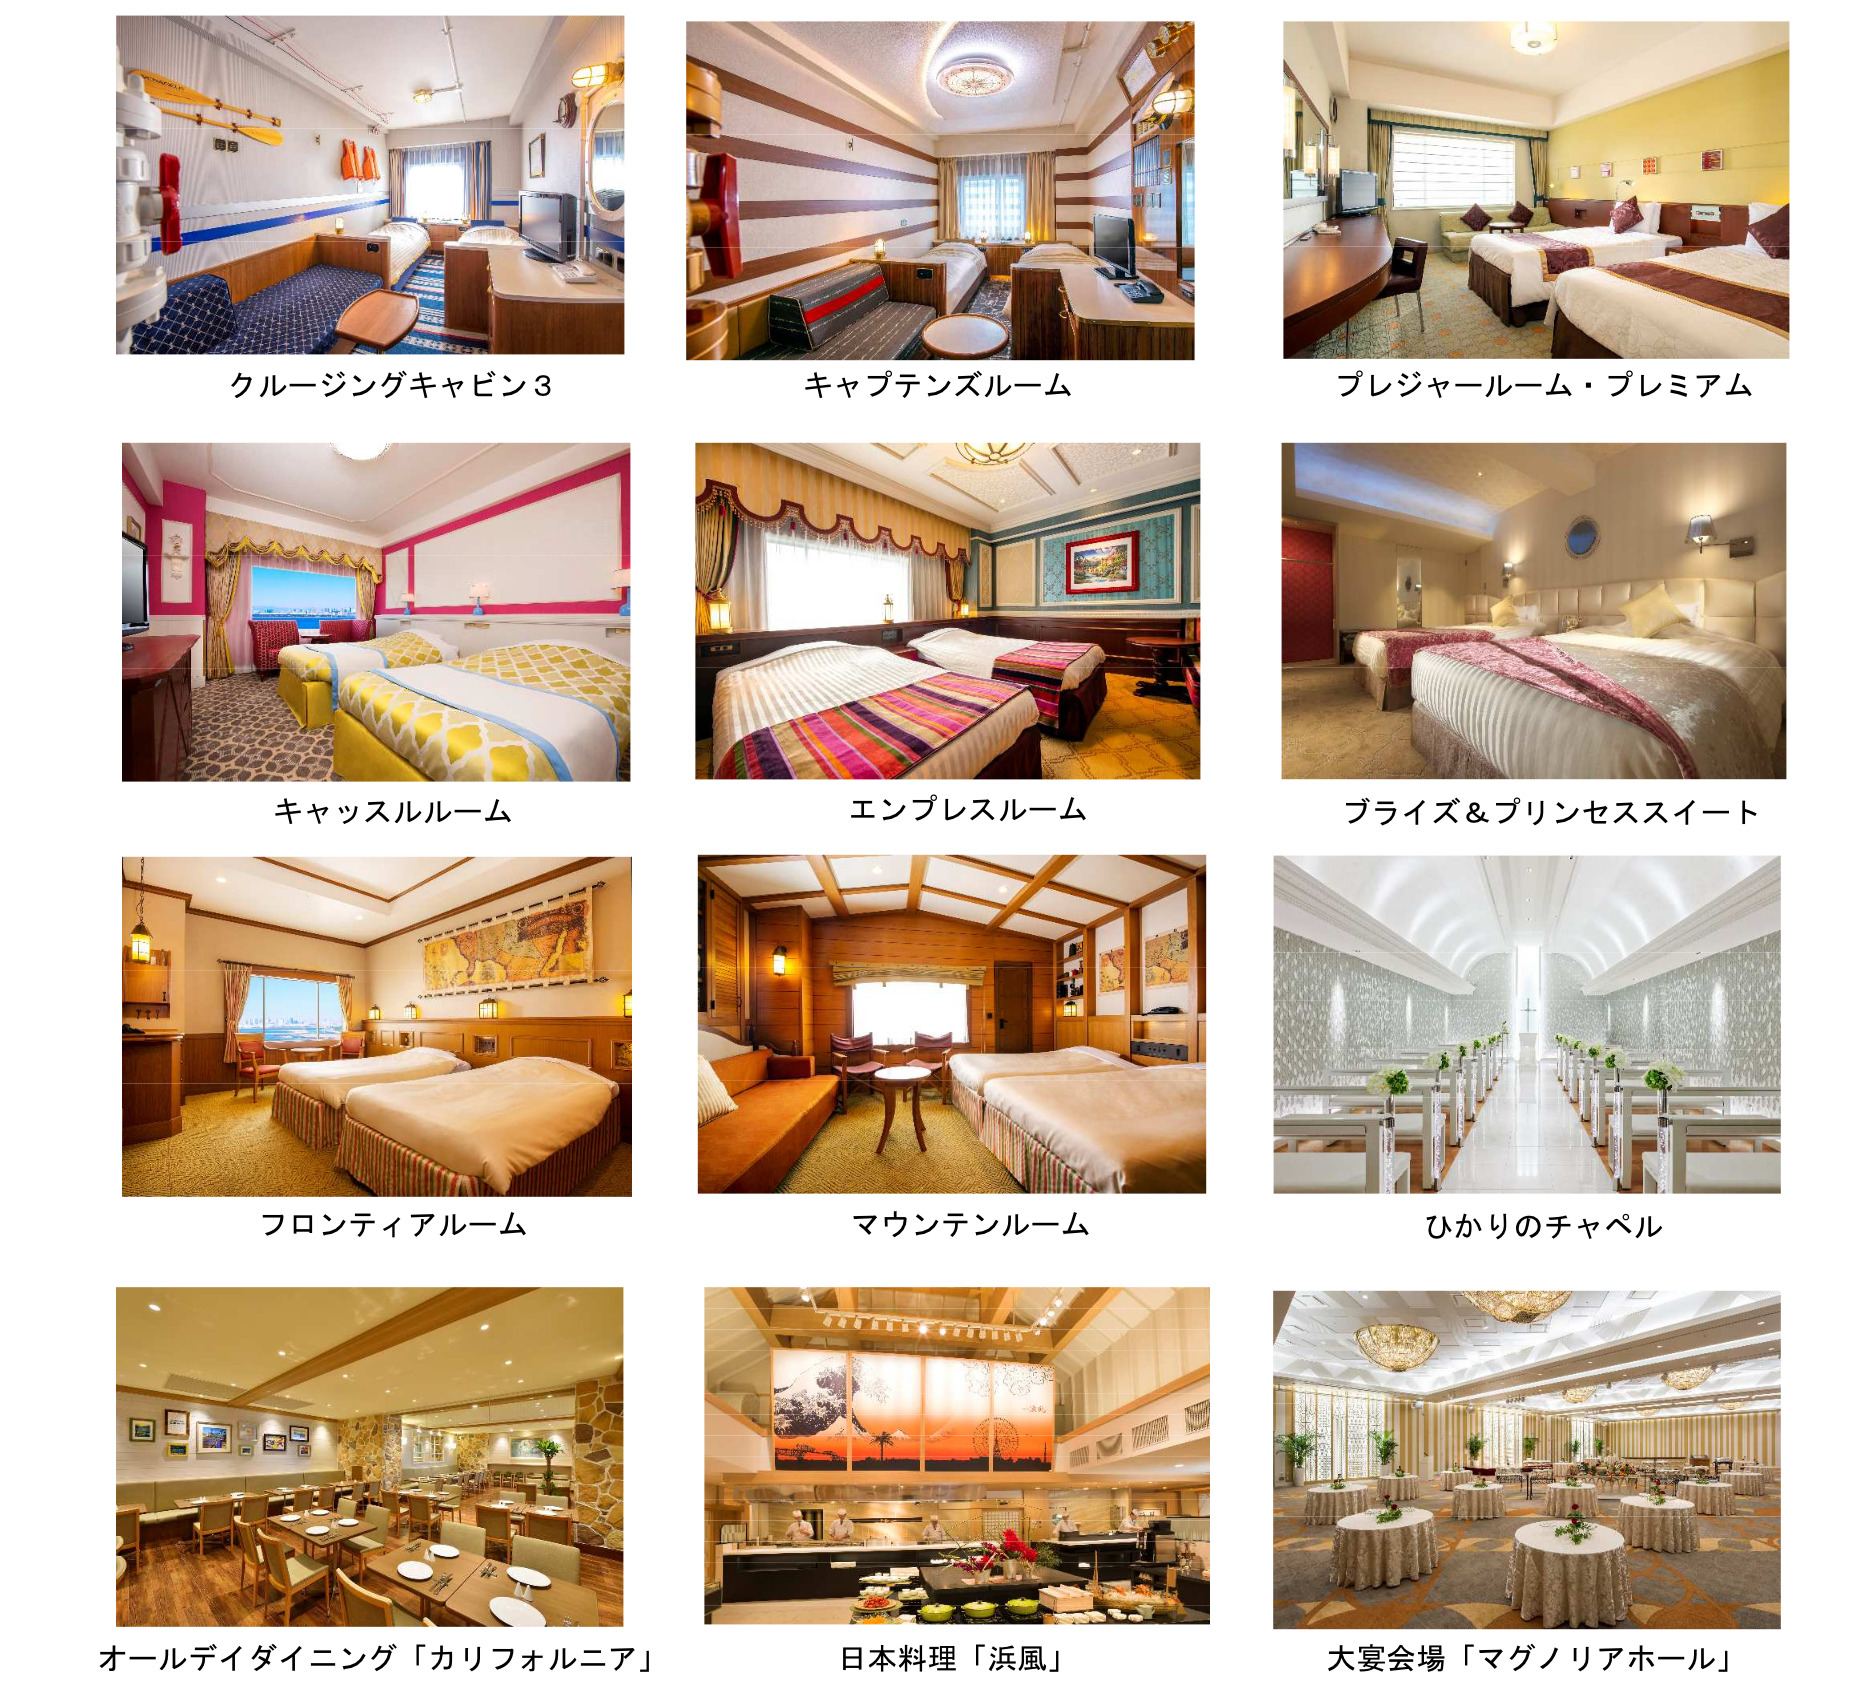 『東京ベイ舞浜ホテル ファーストリゾート』リノベーション例